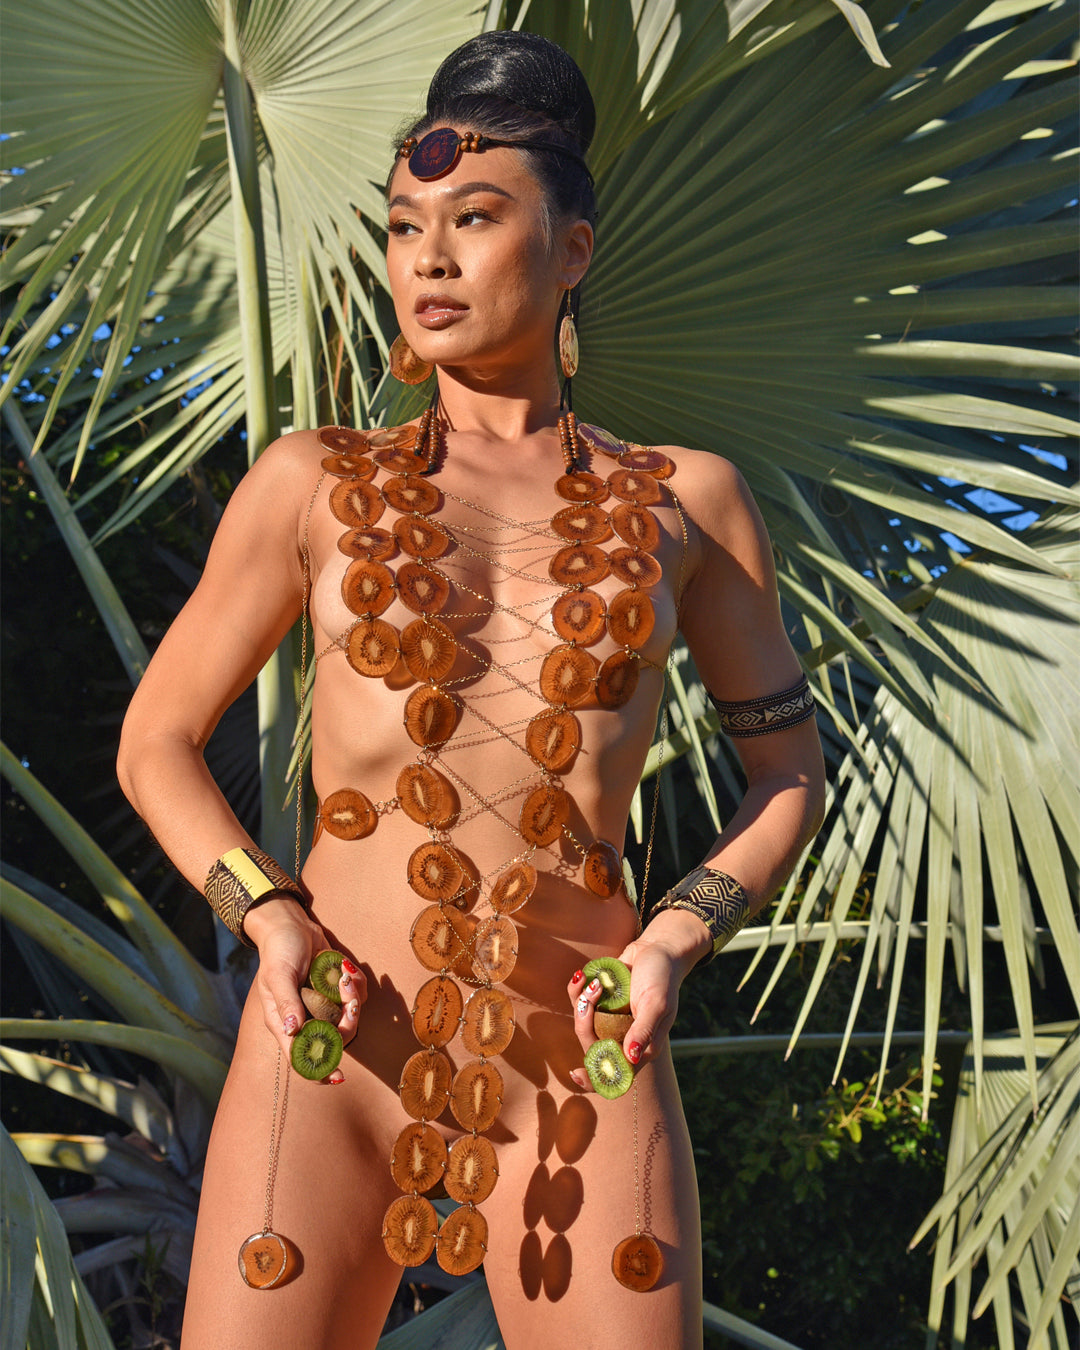 Real kiwi body jewelry on model designed by Liliana Salazar